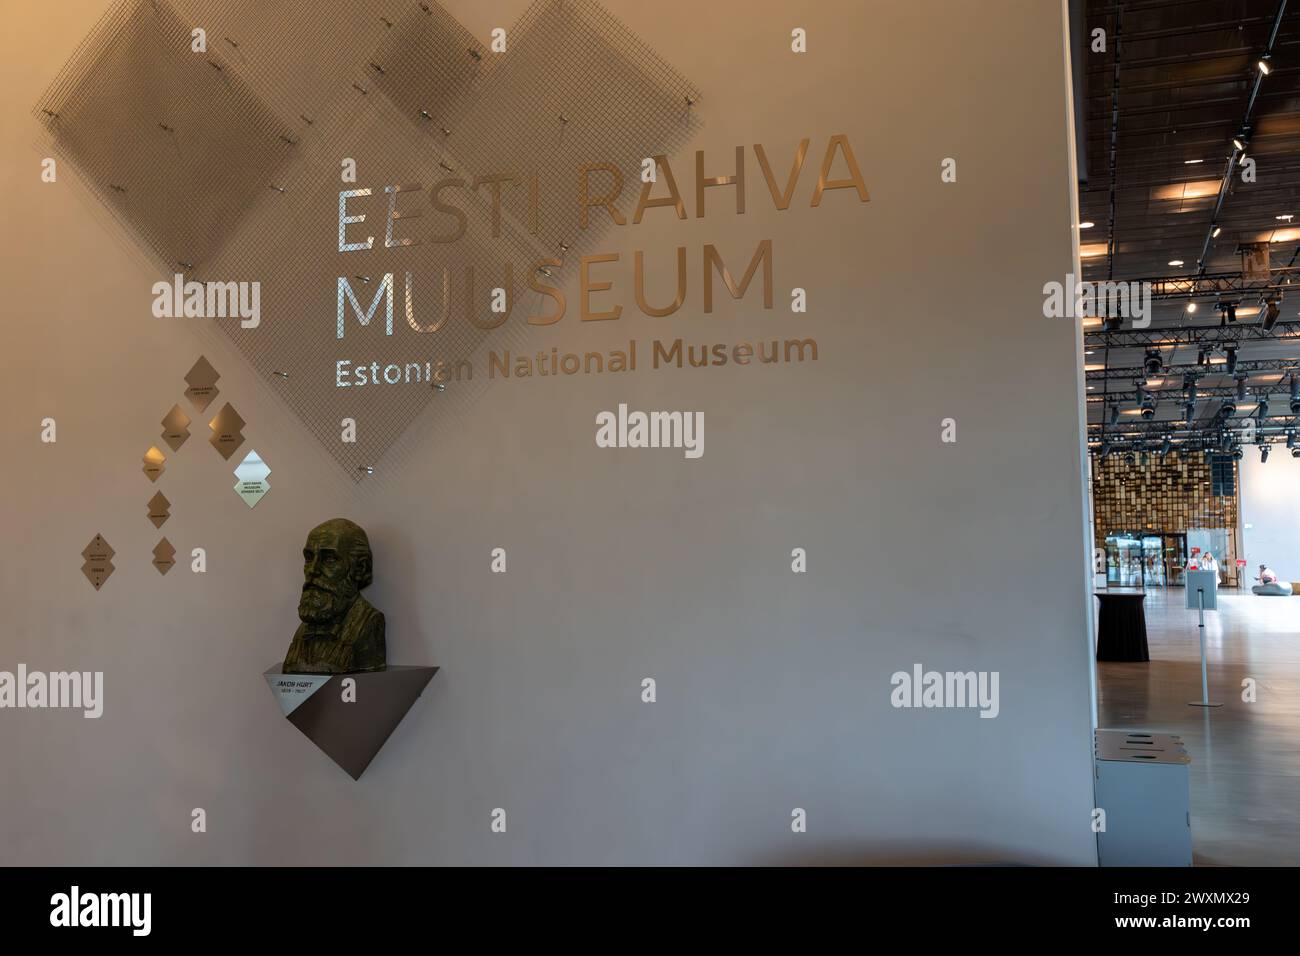 Tartu, Estonia - 07.20.2023: Eesti Rahva Muuseum or Estonian National Museum sign Stock Photo